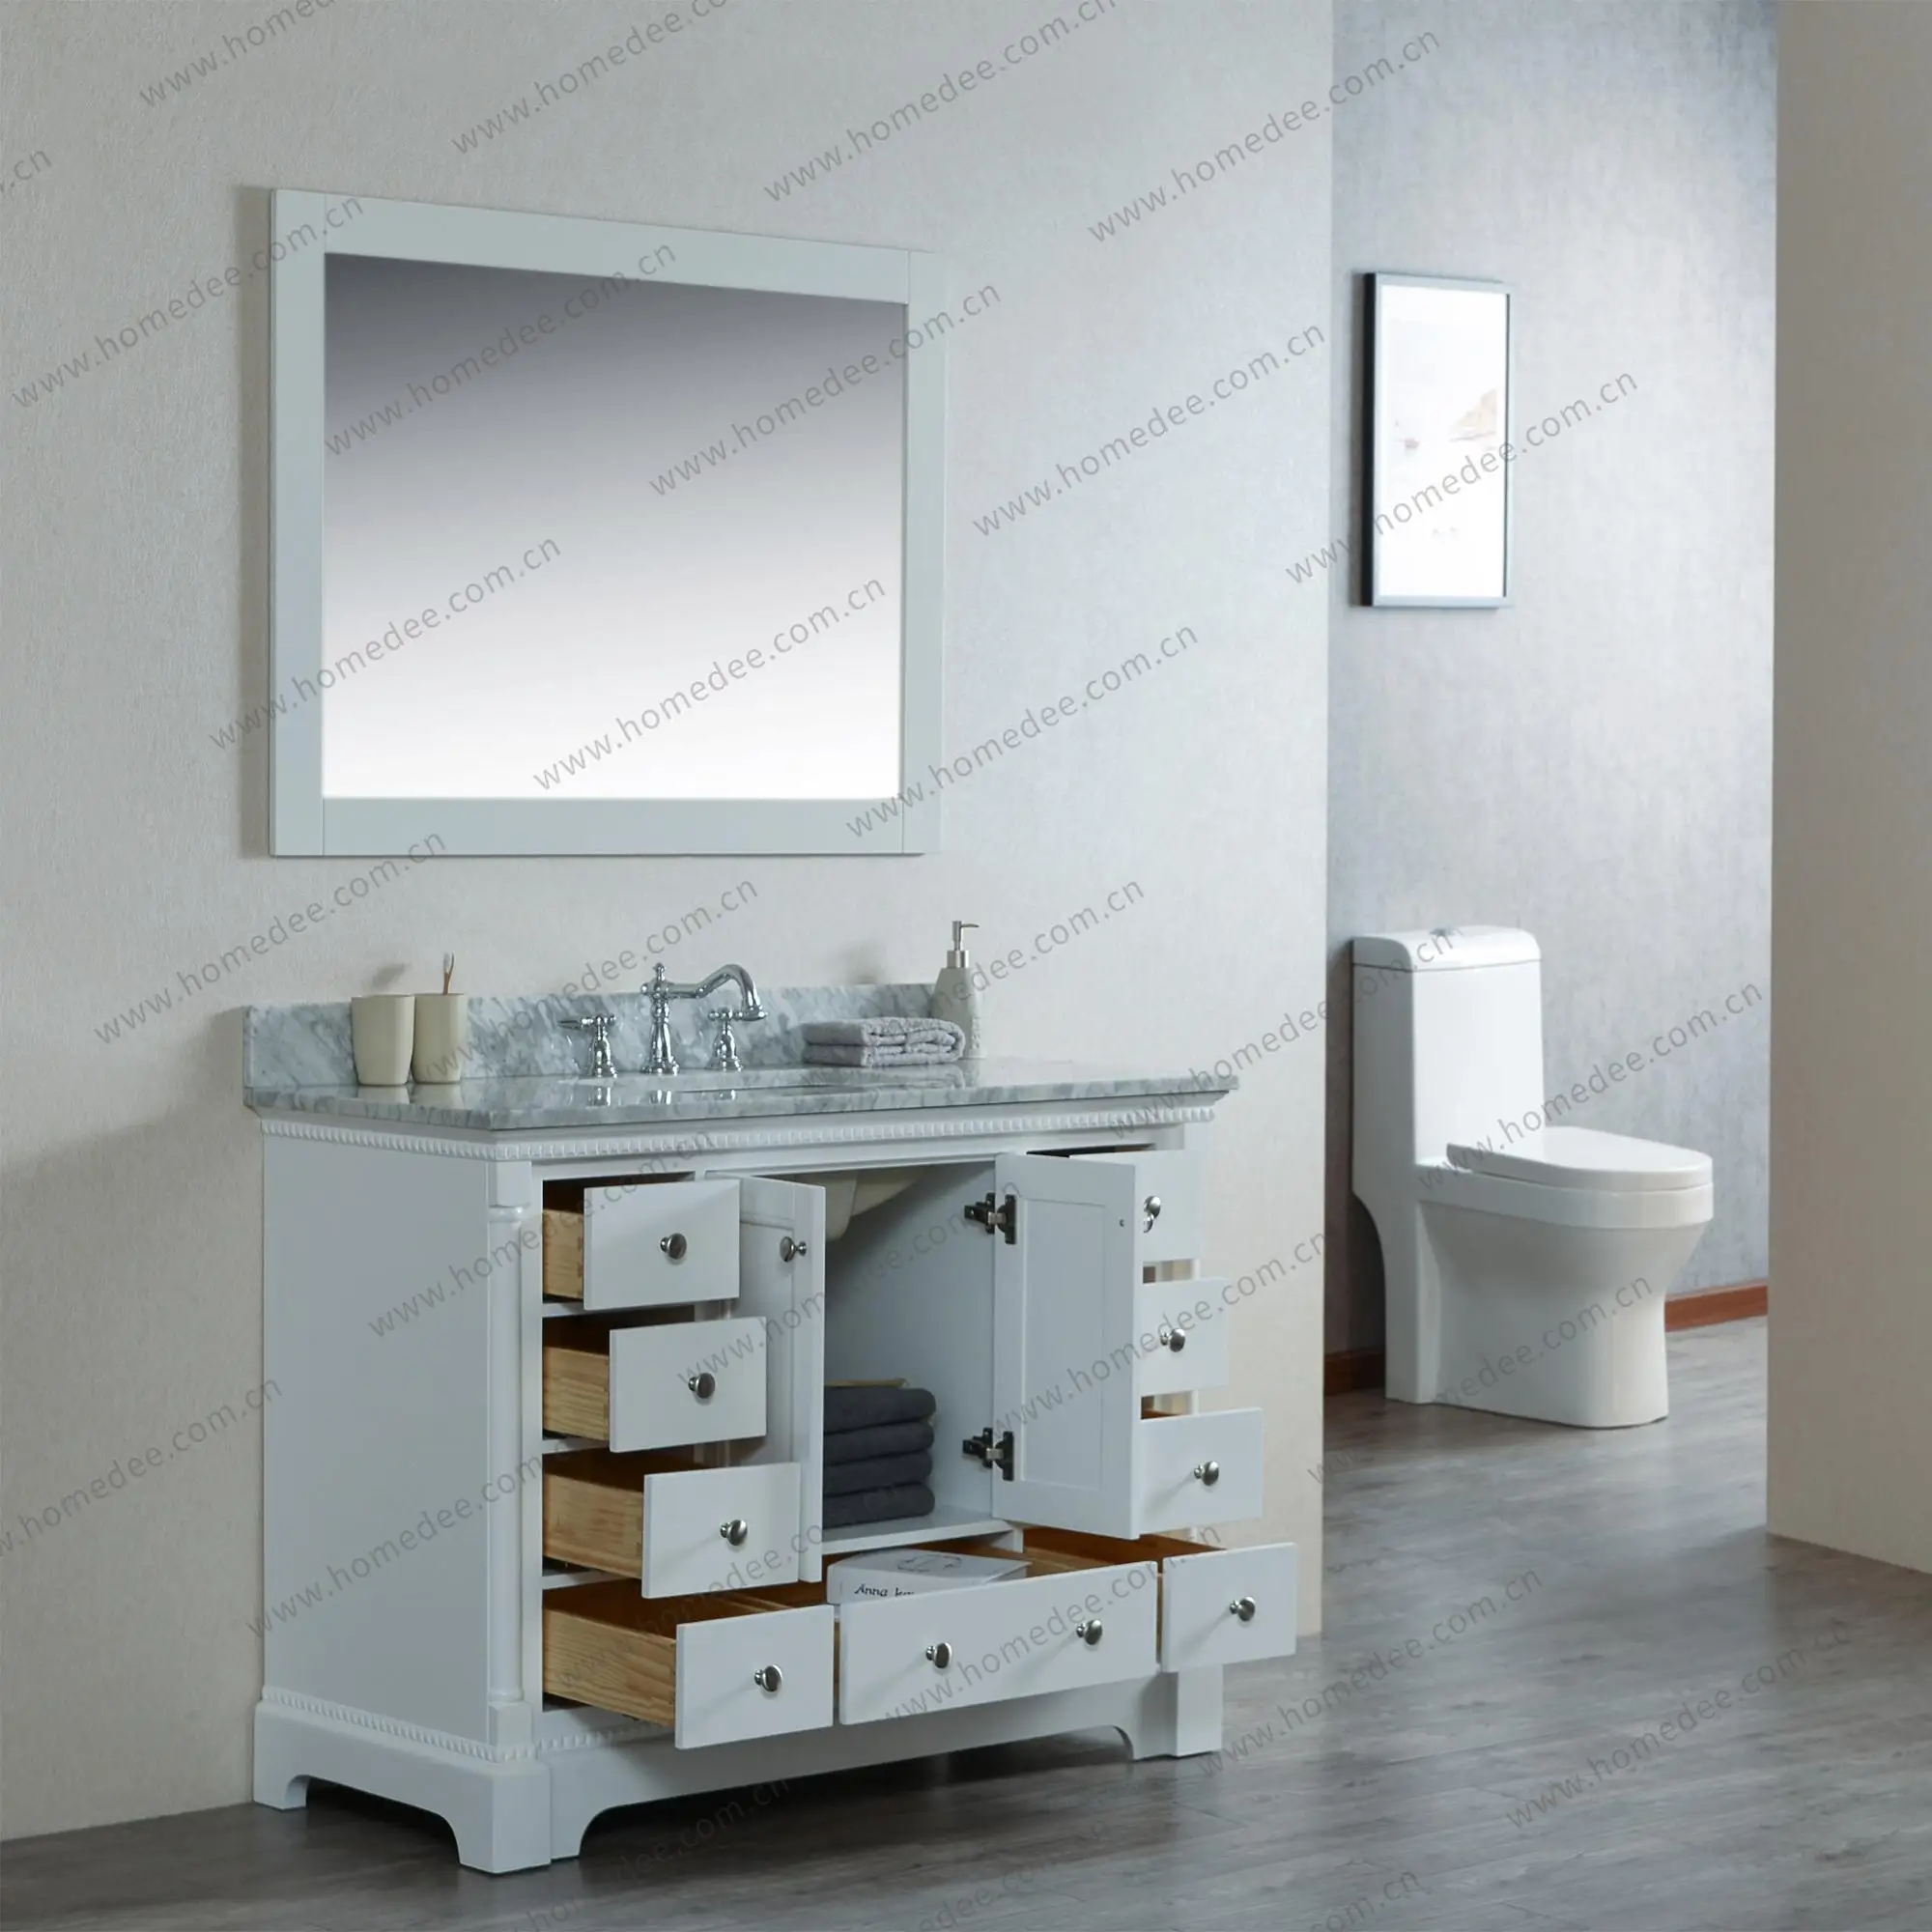 Homedee Allen Roth Bathroom Cabinets Vanities Buy Vanities Allen